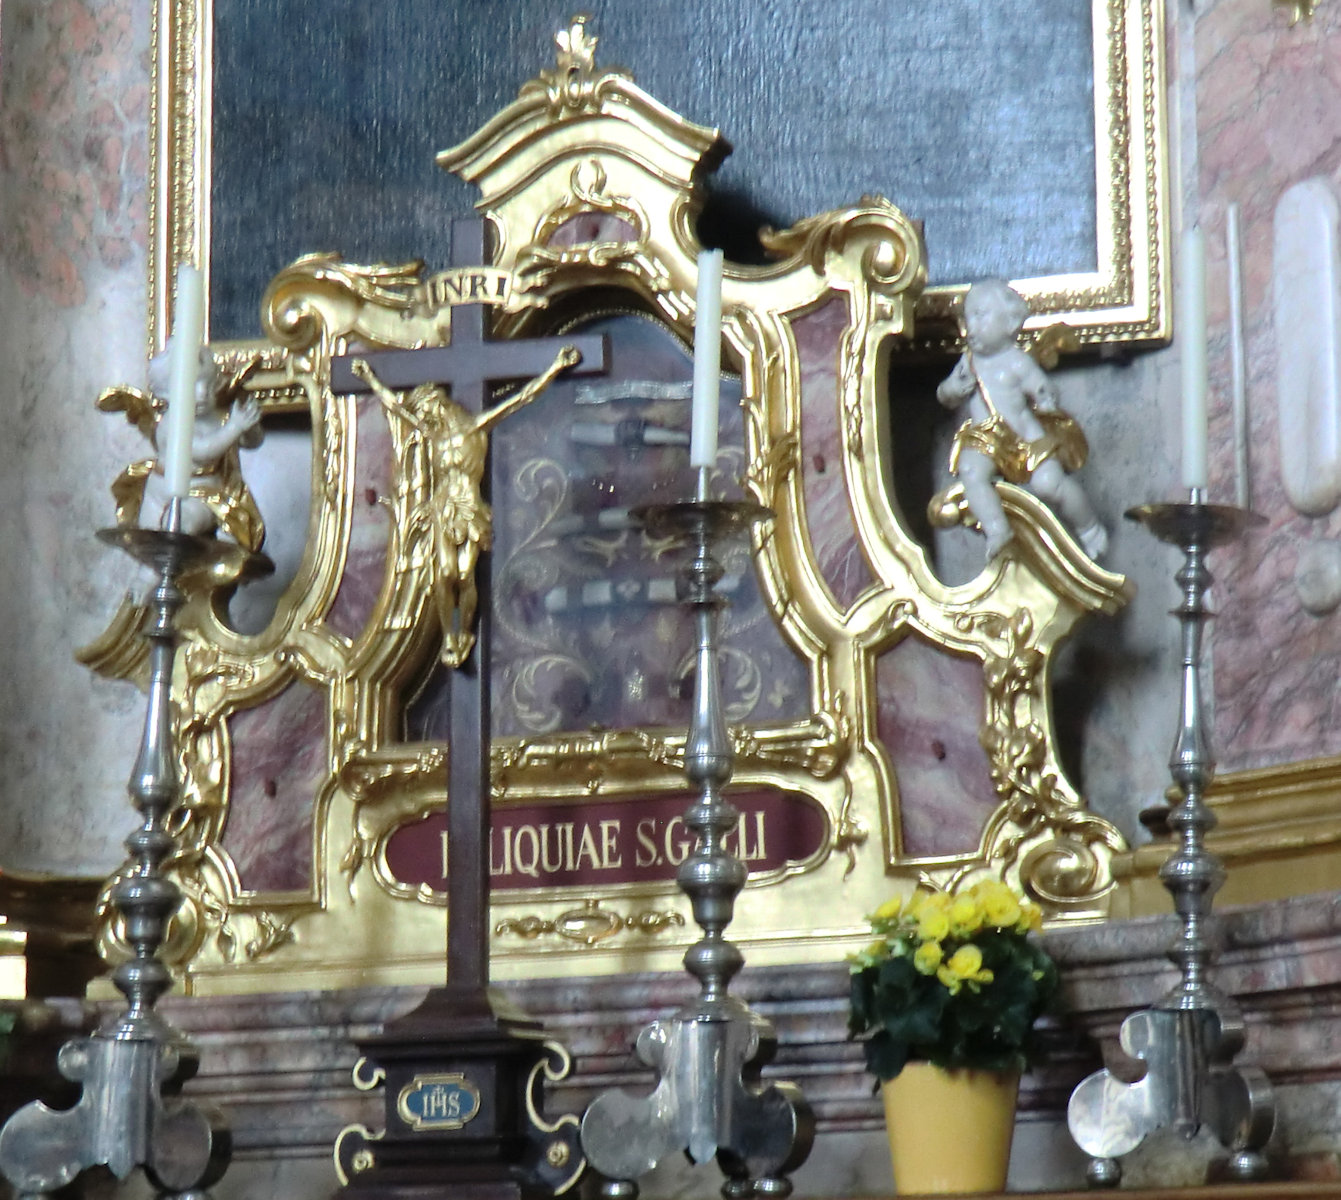 Gallus' Reliquien in der Kathedrale des Klosters St. Gallen